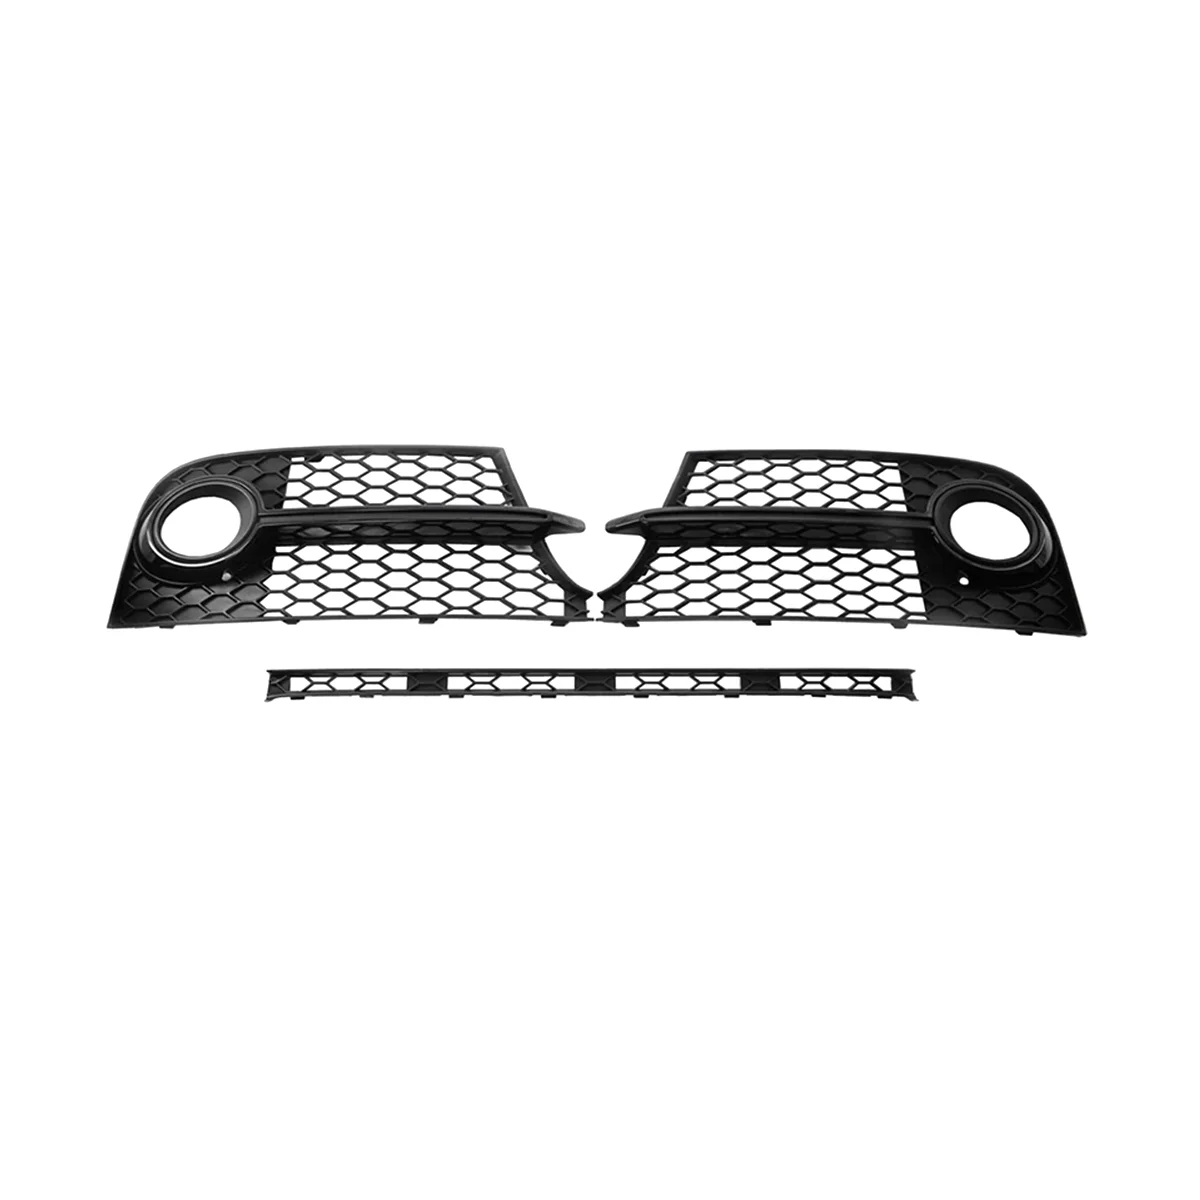 Глянцево-черный левый + правый передний бампер, рамка противотуманной фары, решетки противотуманных фар для Audi TTS 2011-2014